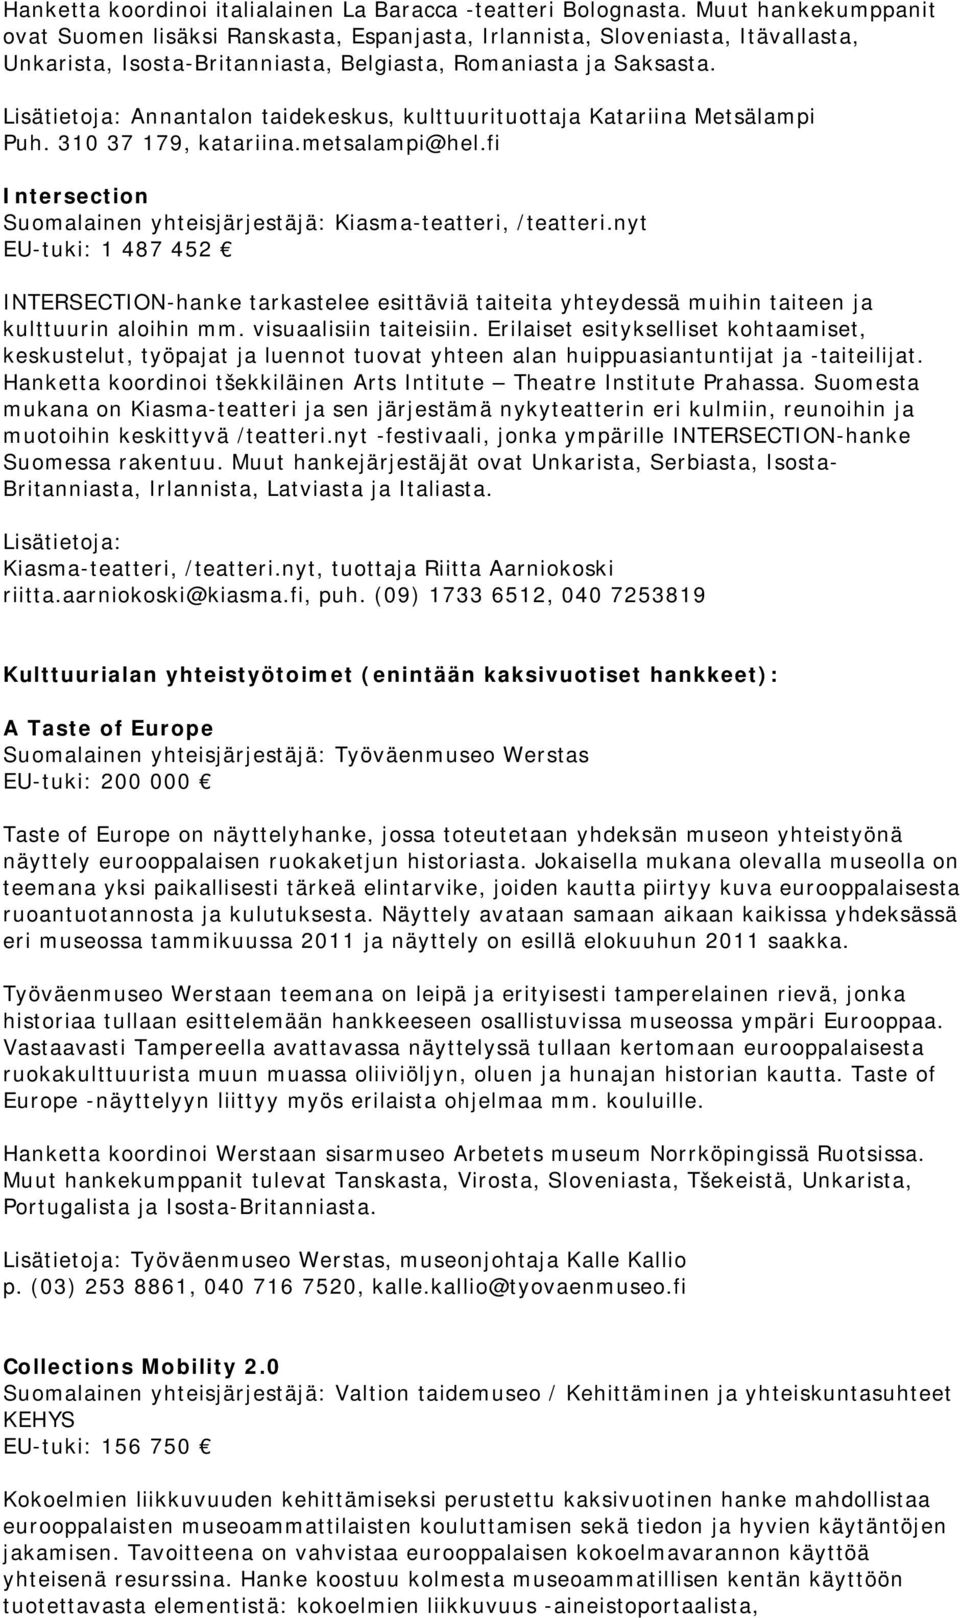 Annantalon taidekeskus, kulttuurituottaja Katariina Metsälampi Puh. 310 37 179, katariina.metsalampi@hel.fi Intersection Suomalainen yhteisjärjestäjä: Kiasma-teatteri, /teatteri.